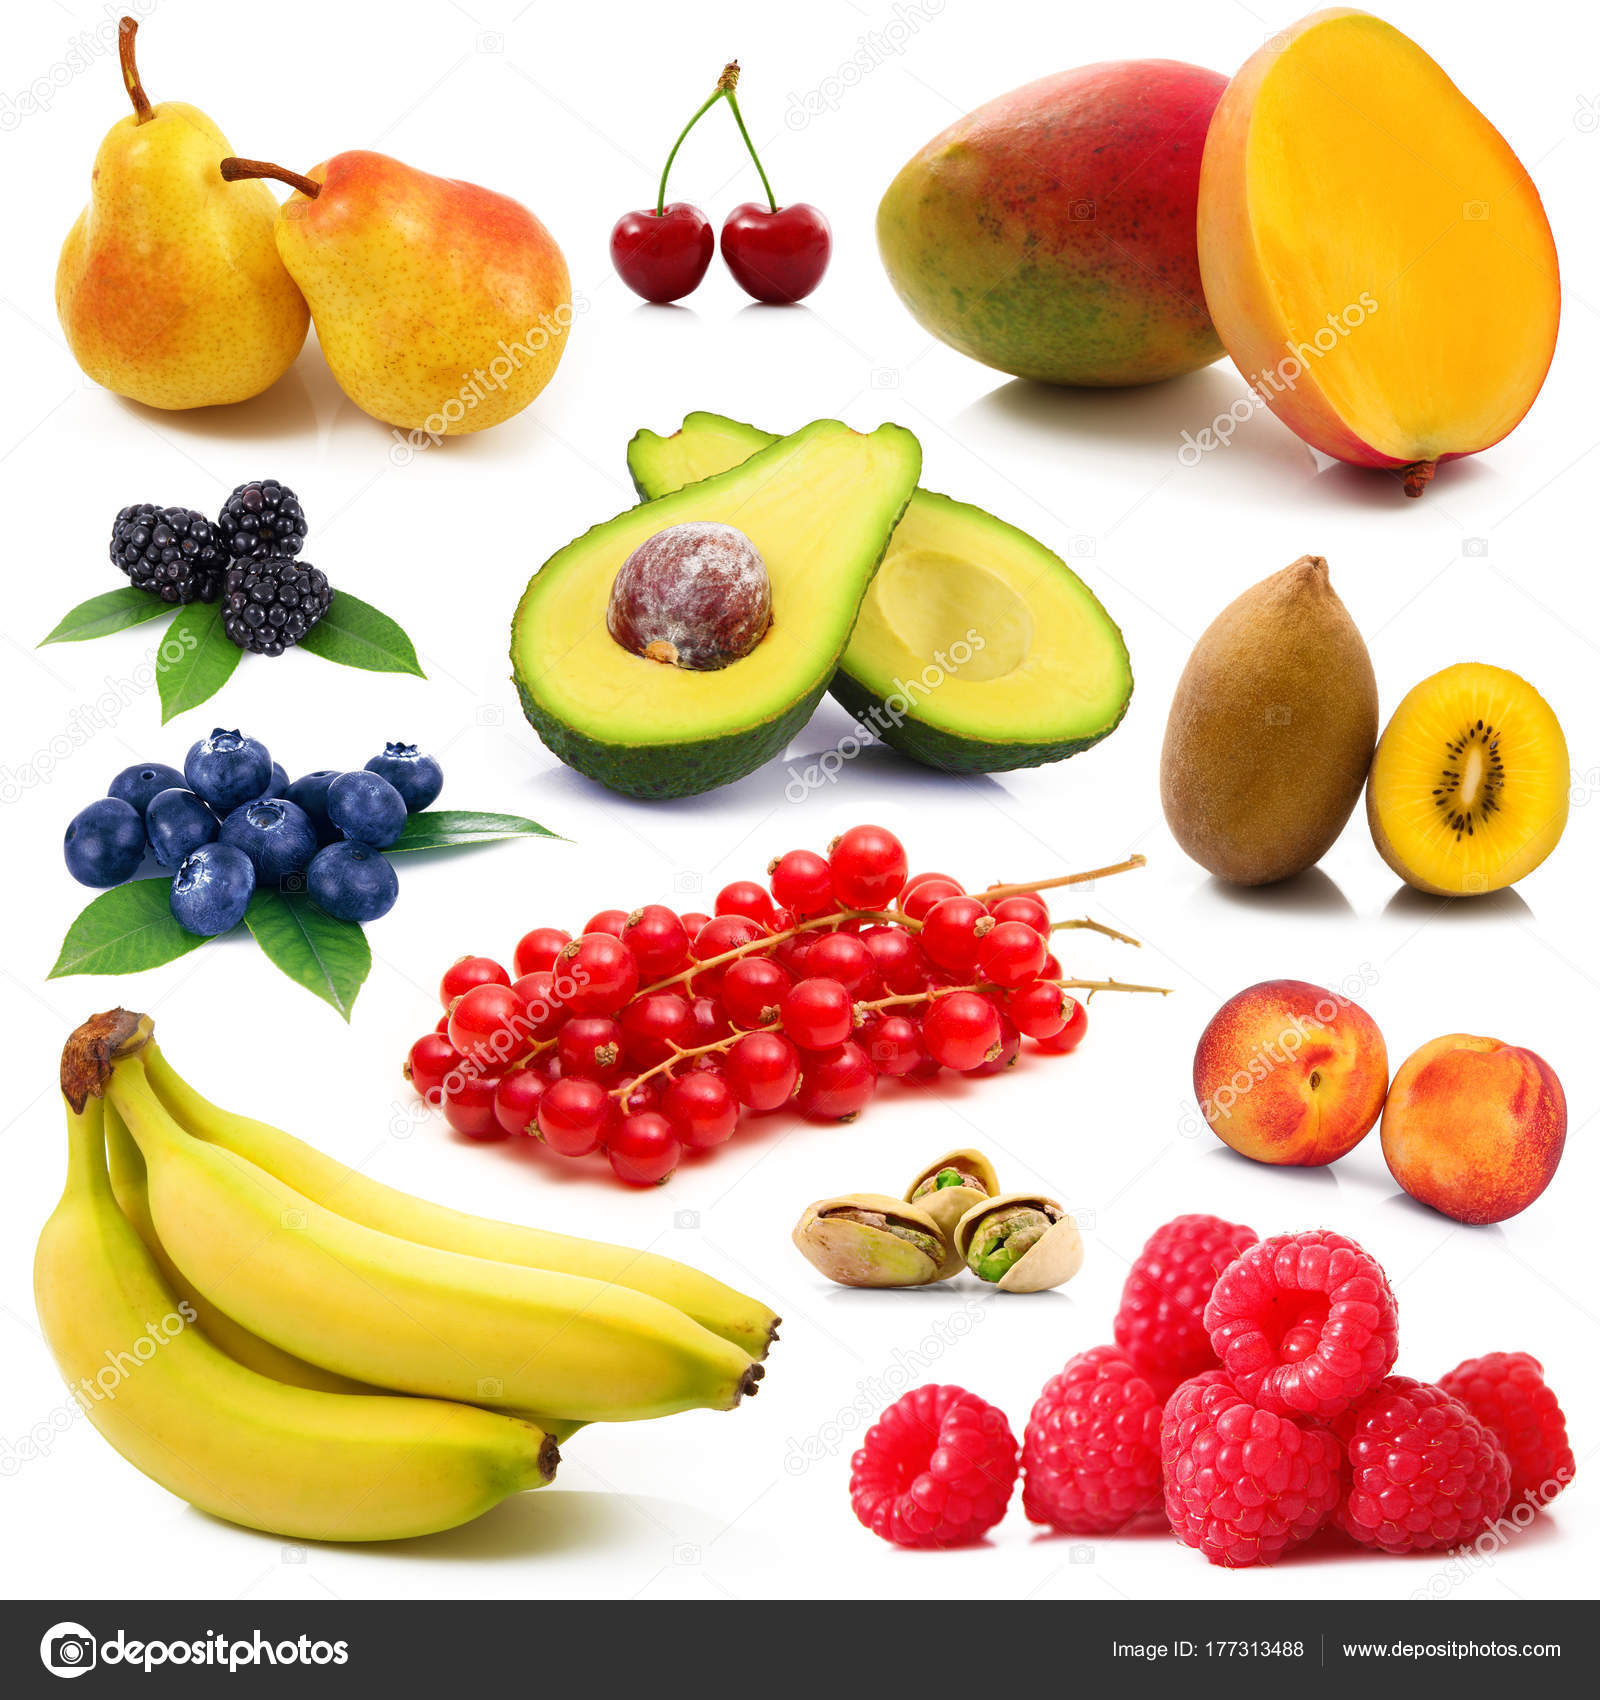 fruit collage on white background — Stock Photo © Photobeps #177313488